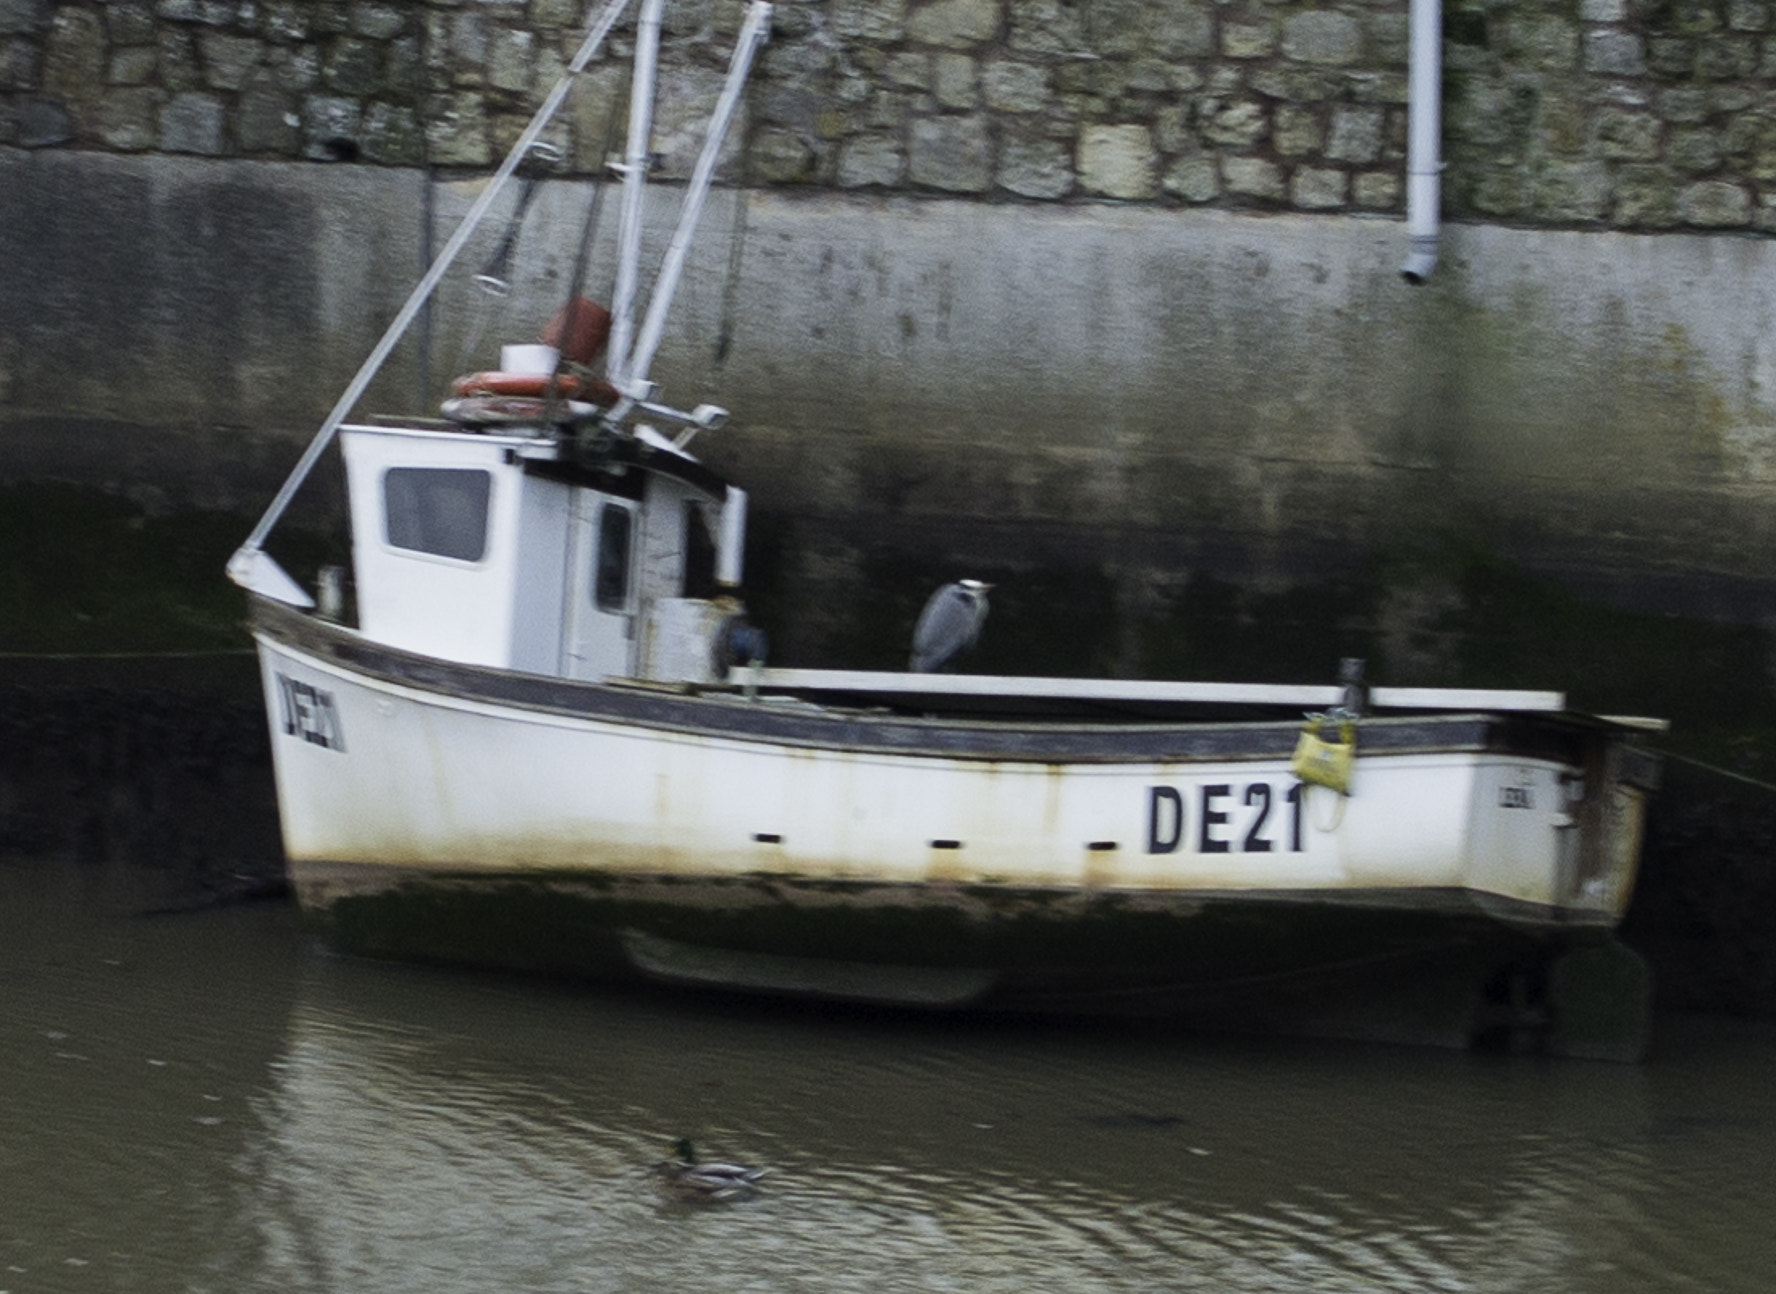 Nikon D800E + Nikon AF-S Nikkor 28mm F1.8G sample photo. St andrews fishing boat photography